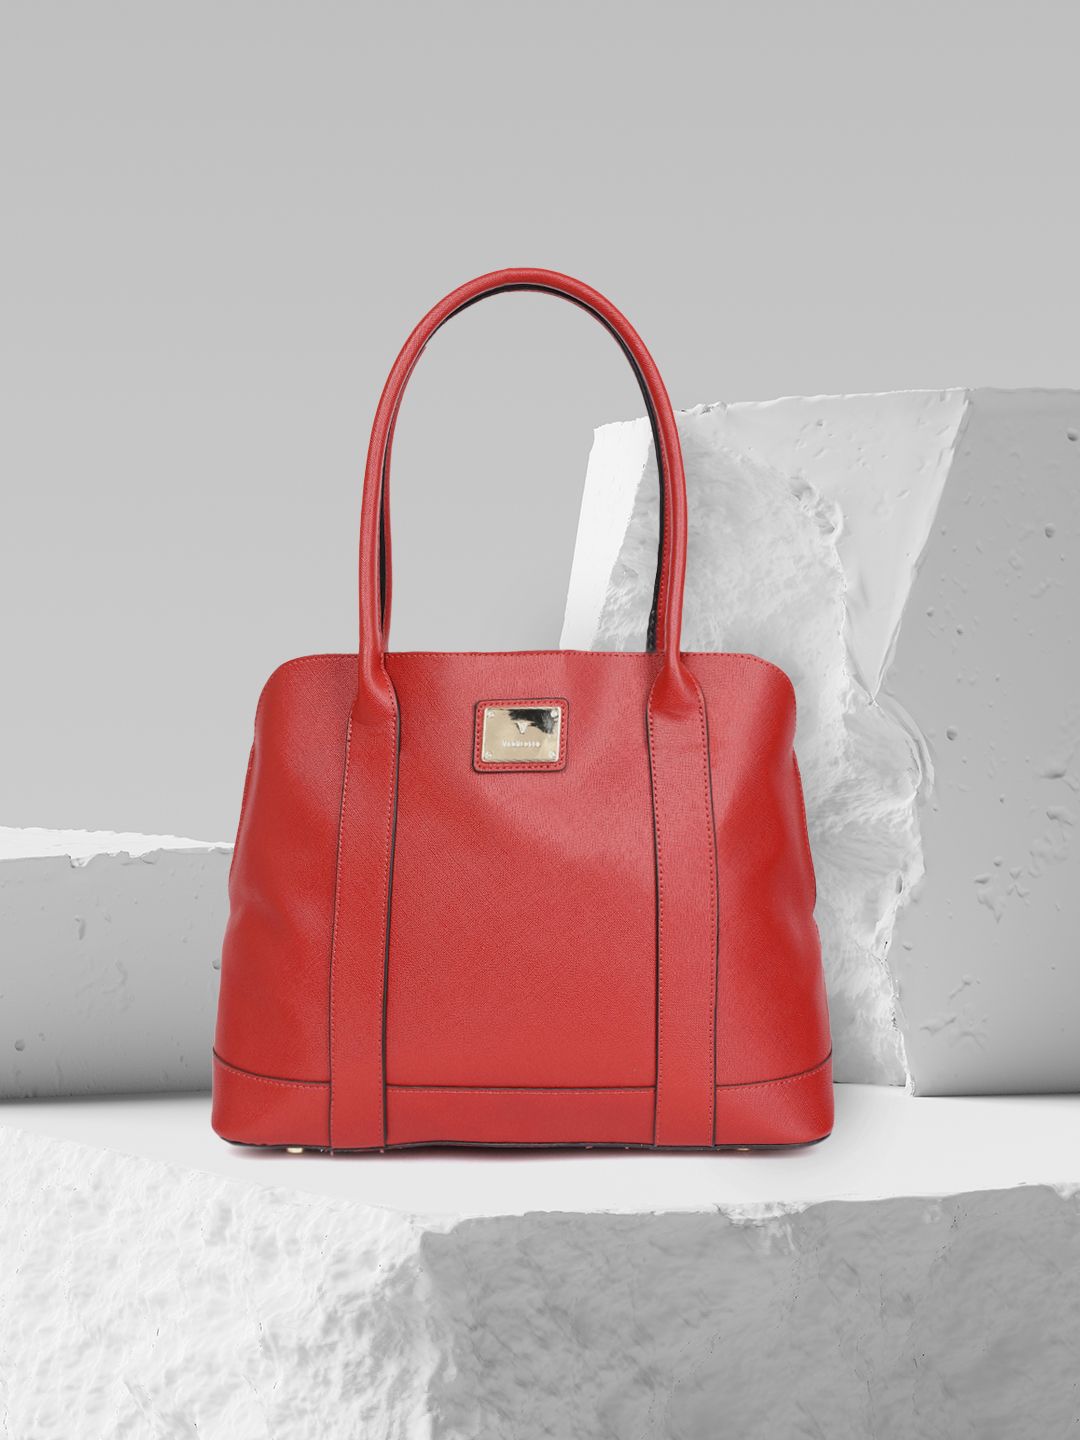 Van Heusen Red Solid Structured Shoulder Bag Price in India